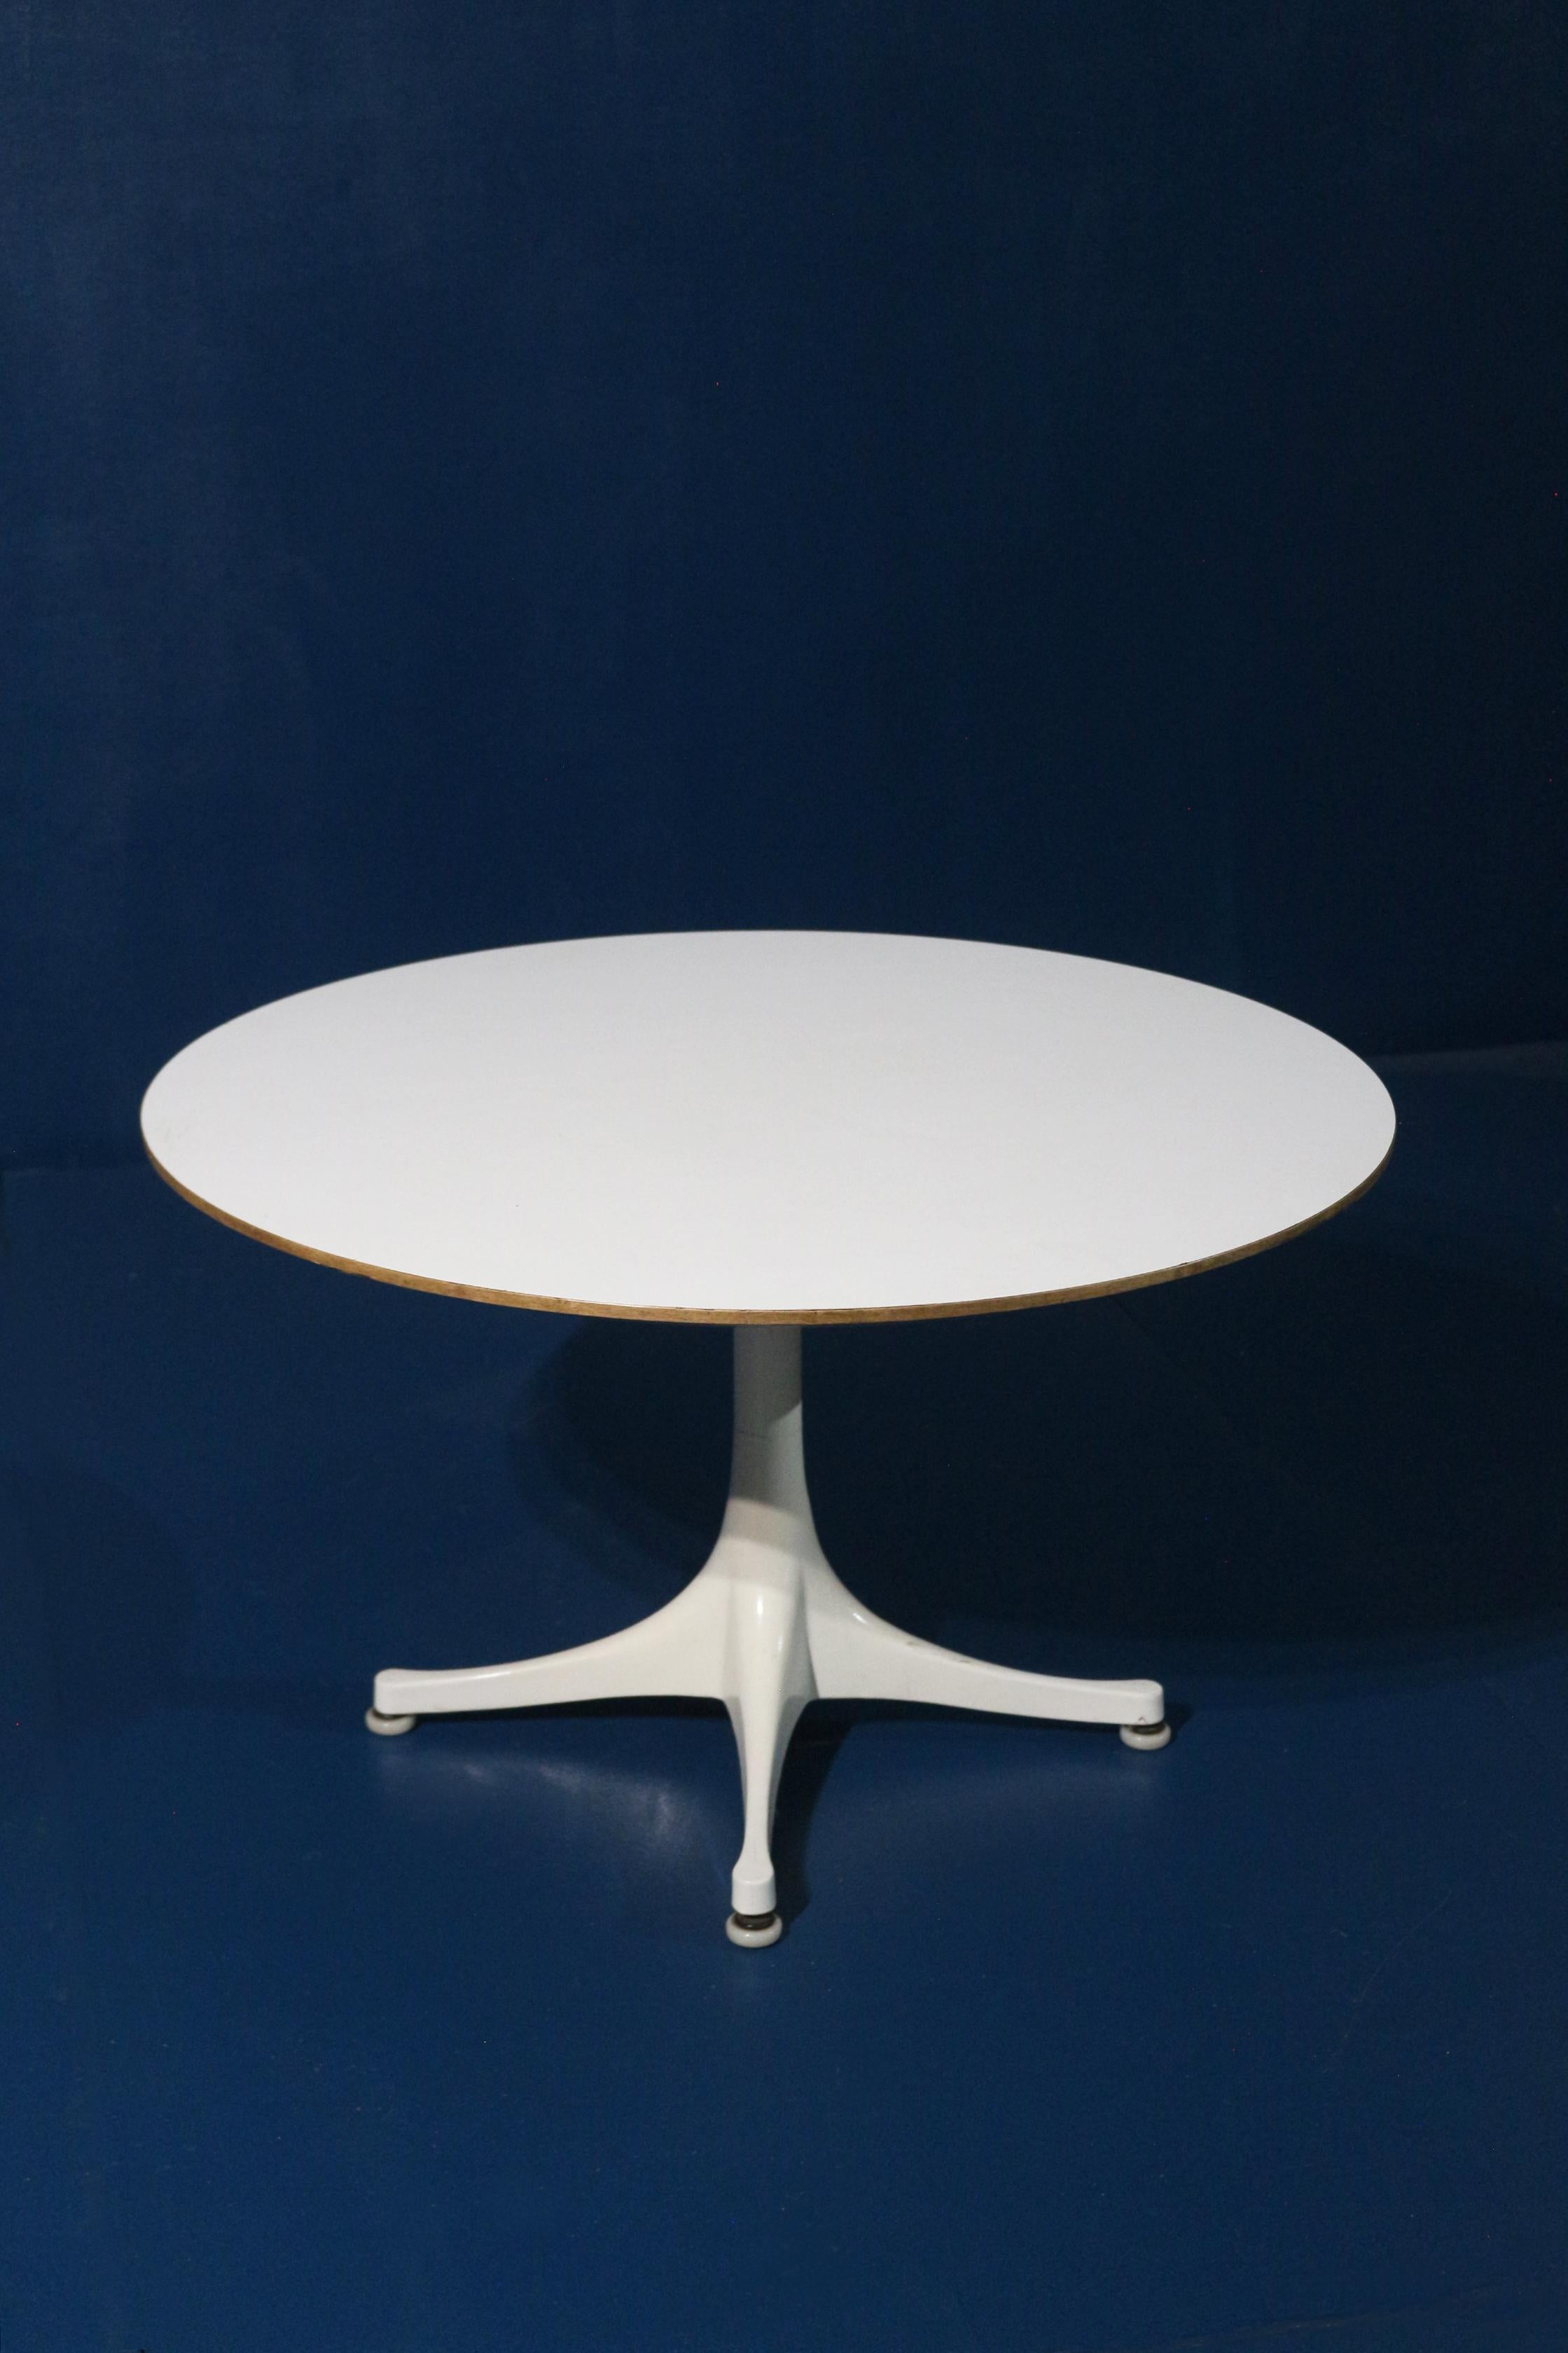 Seltener Tisch aus den 60er Jahren vom Designer George Nelson gefertigt
Très bon état general . Entièrement d'origine . 
Fabrice Herman Miller . Etiquette présente sous le plateau de la table. 